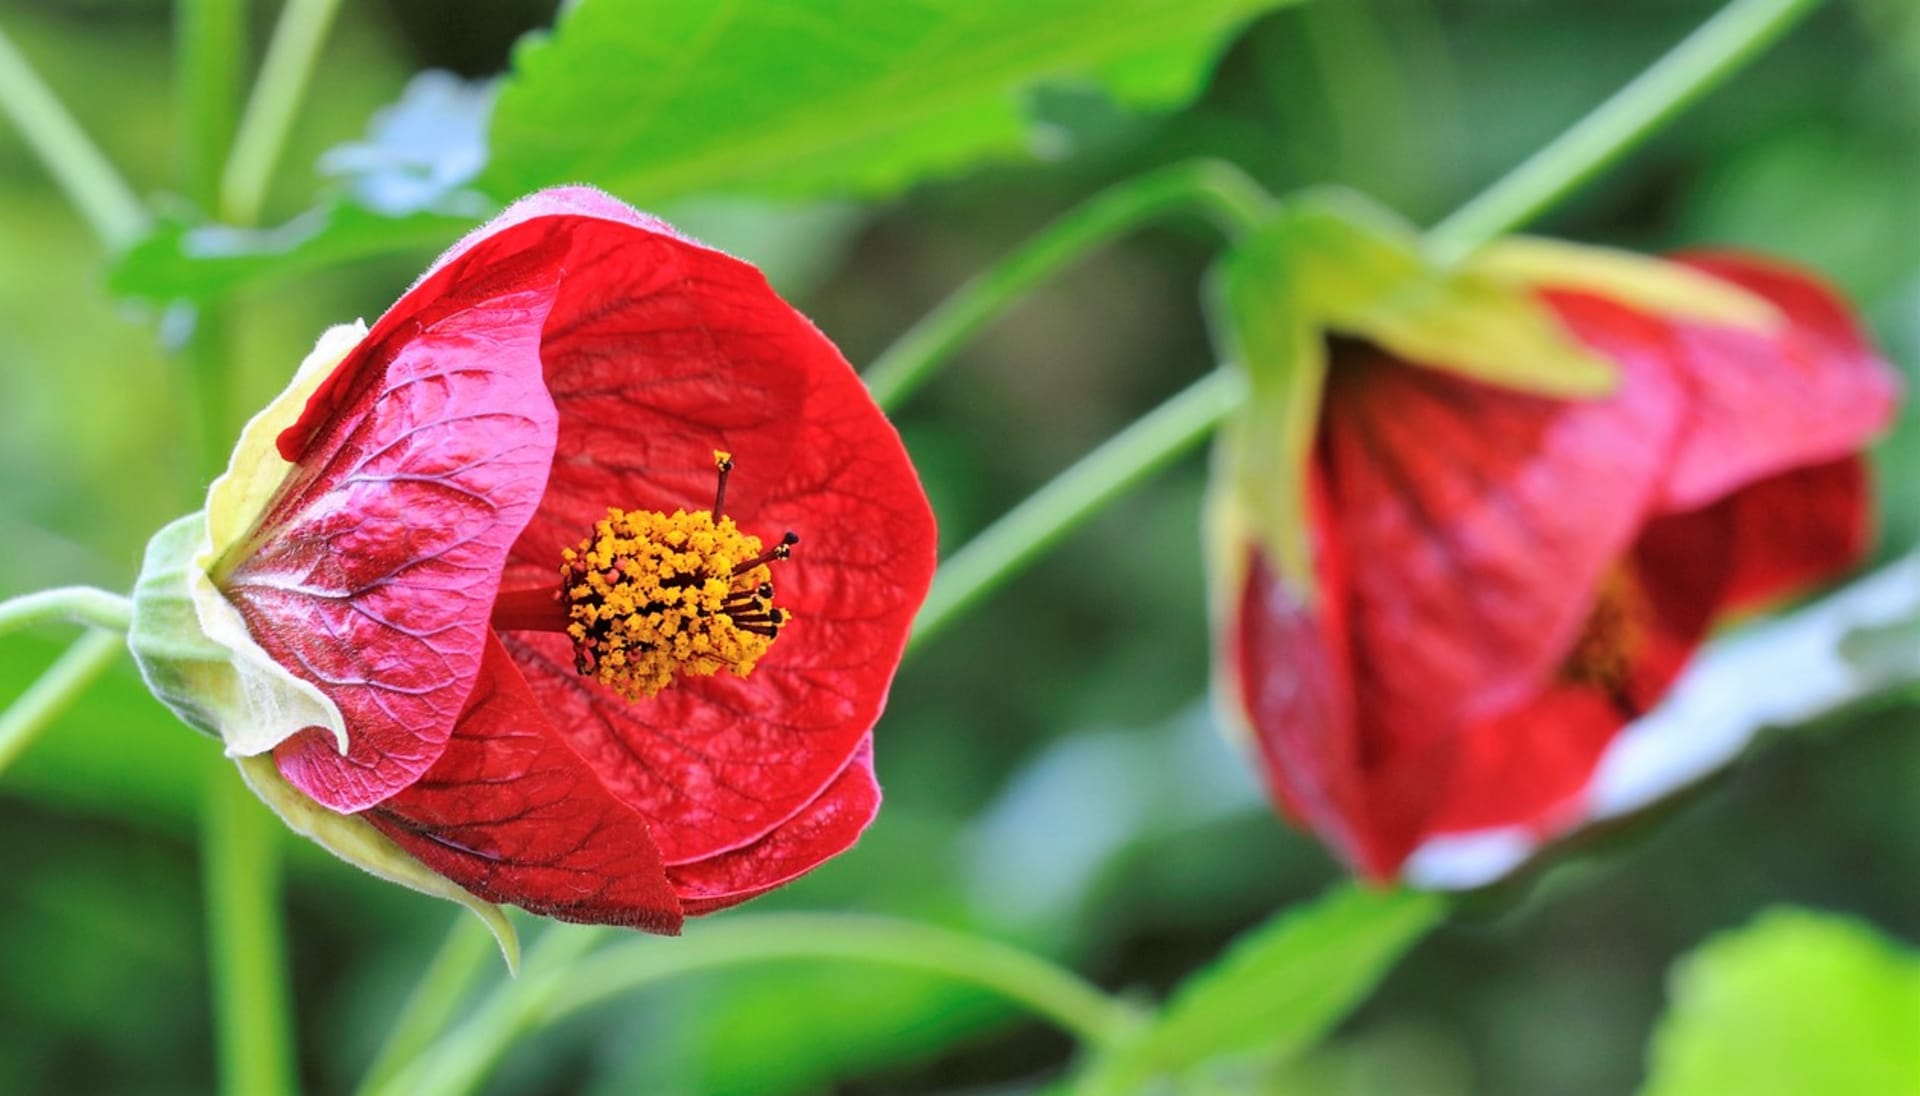 Mračňáky mají nálevkovité květy podobající se květům ibišku čínského, jsou červené, vínové, růžové, losové, oranžové, žluté, čistě bílé či barevně žíhané. Listy některých kultivarů jsou žlutě panašované. 